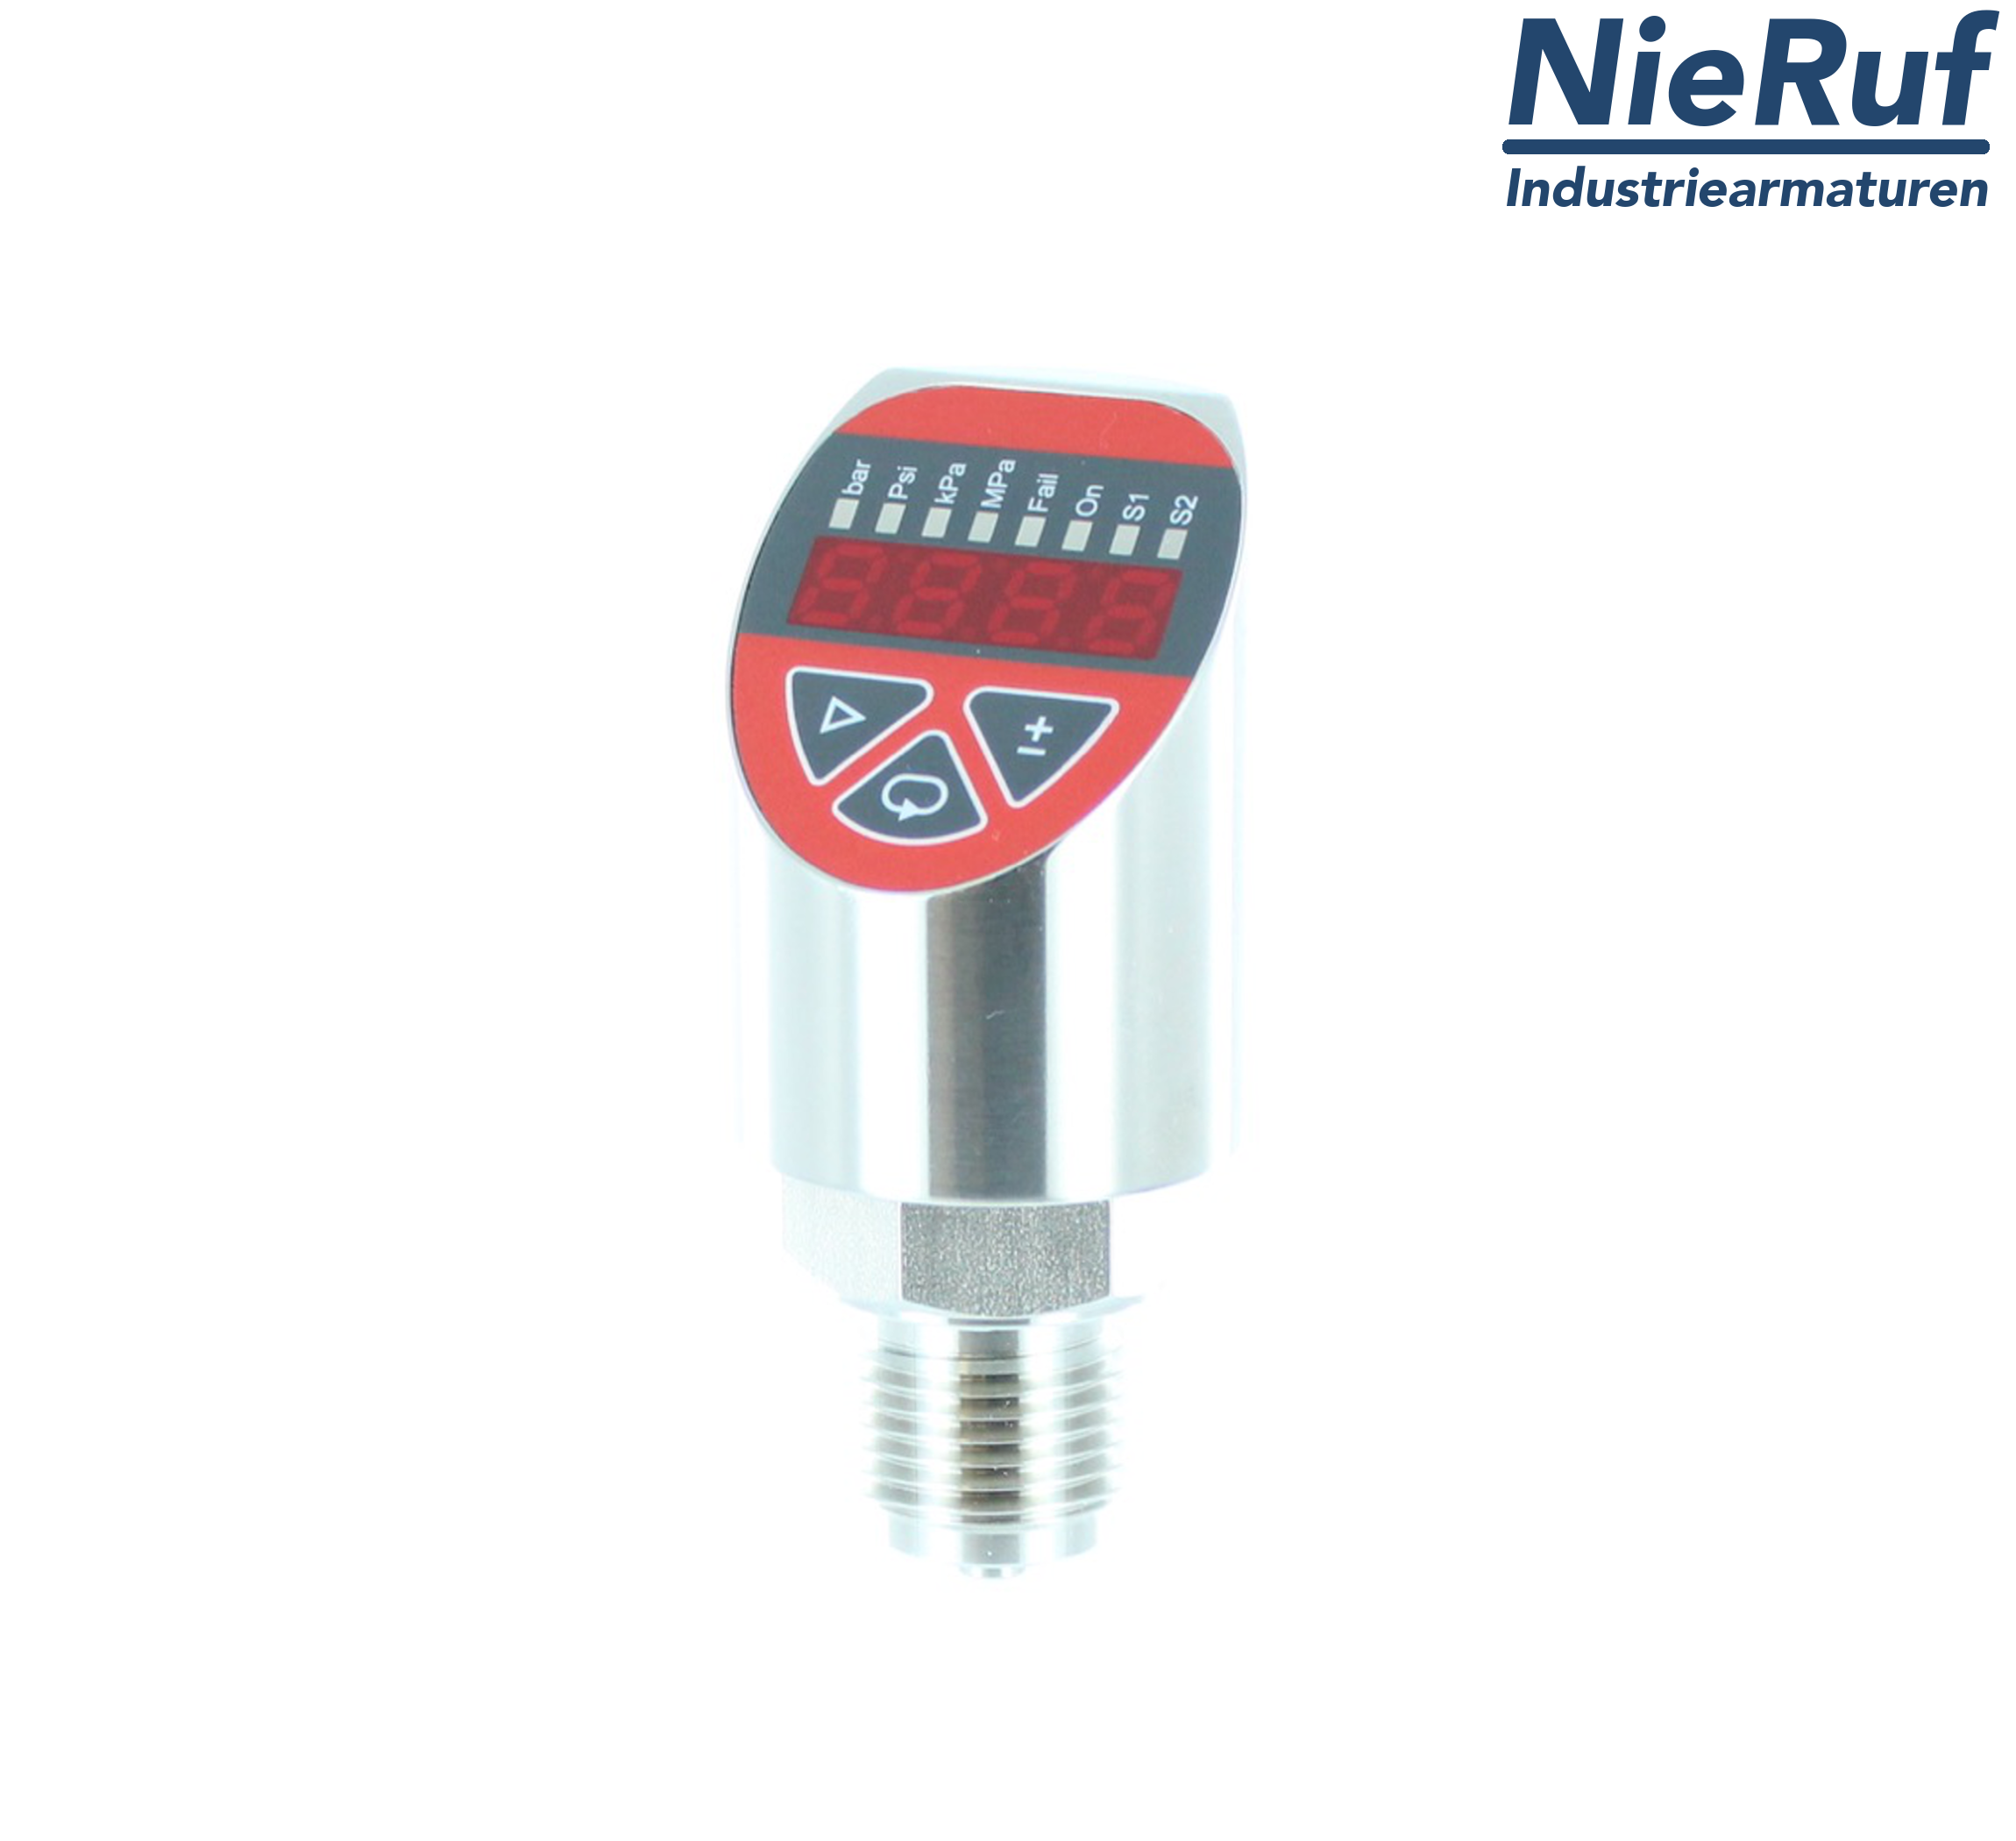 digital pressure sensor G 1/2" B 4-wire: 1xPNP, 1x4 - 20mA FPM 0,0 - 100,0 bar